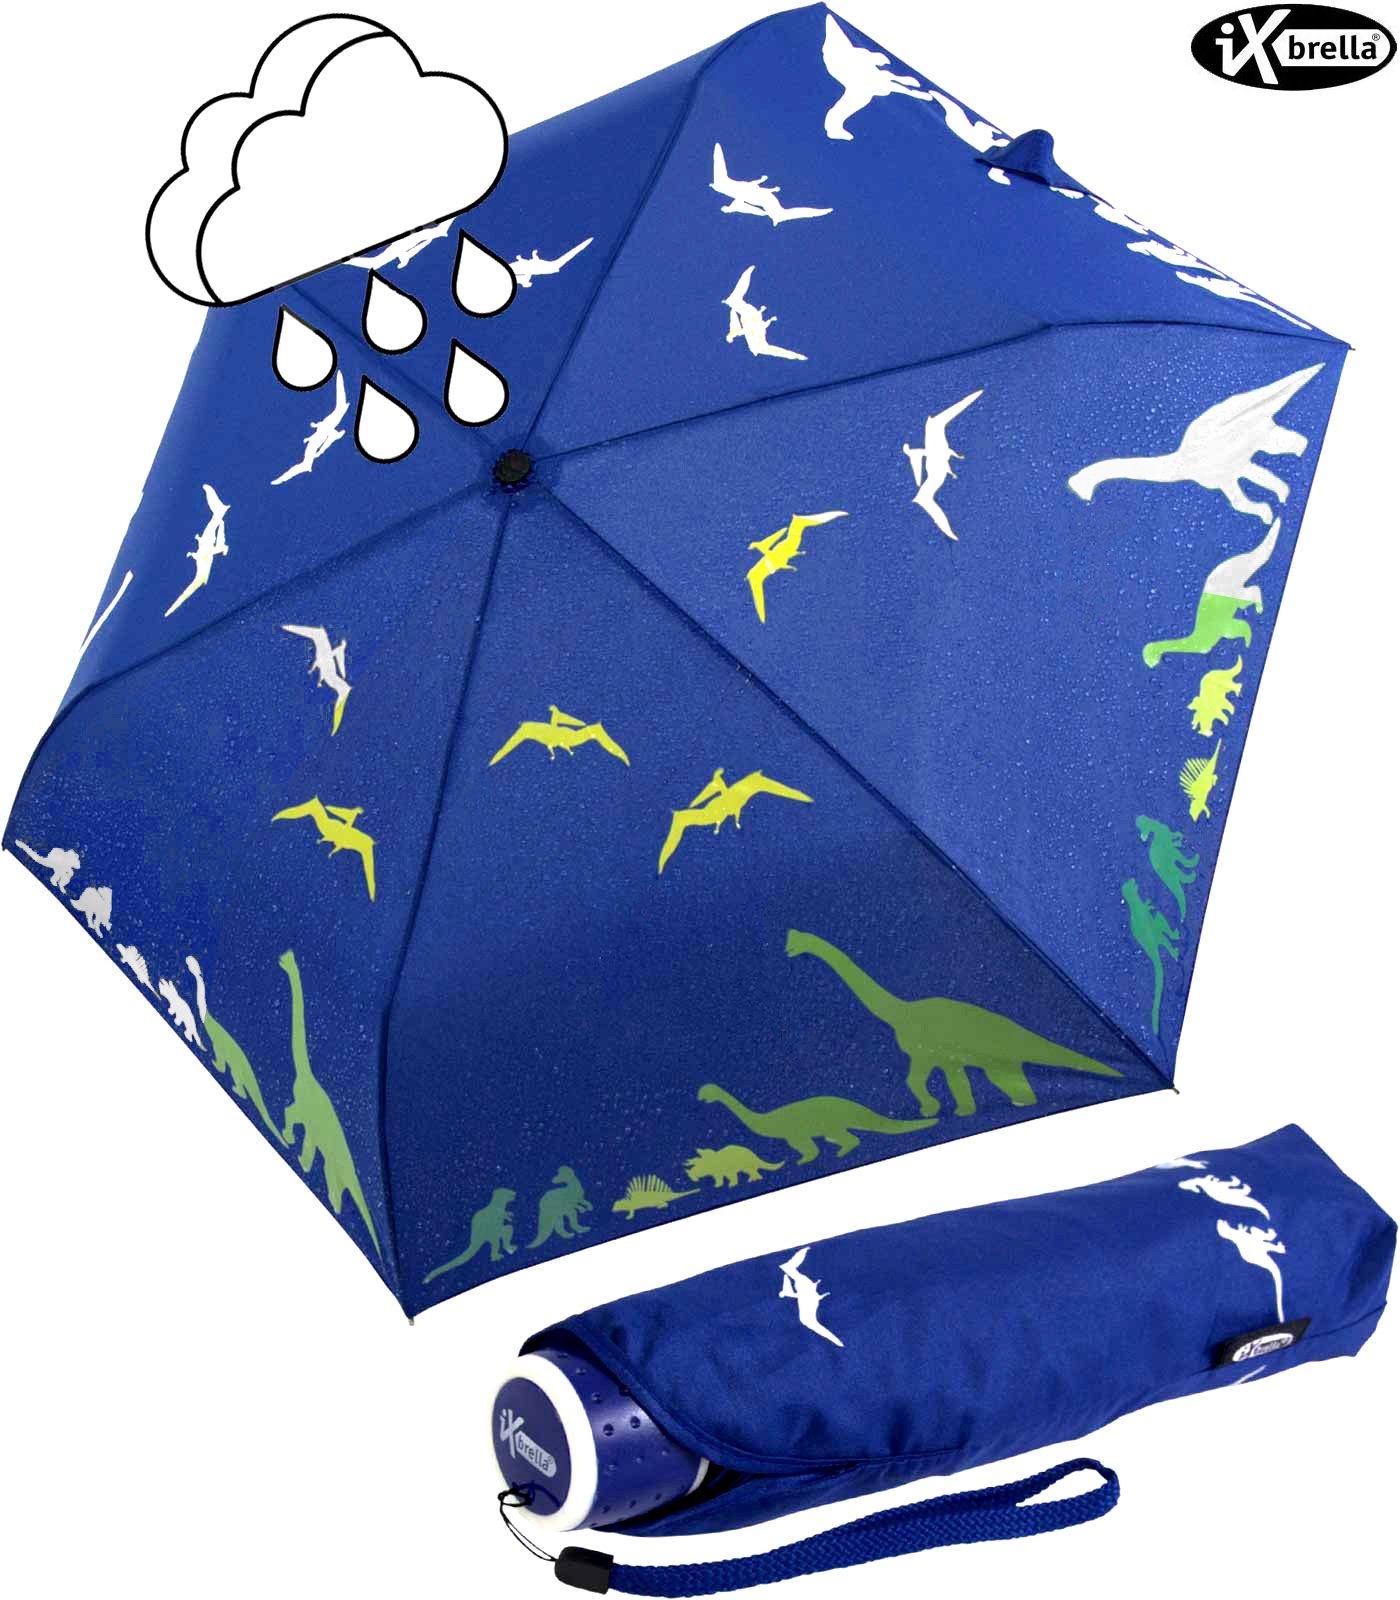 iX-brella Taschenregenschirm iX-brella Mini Kinderschirm mit Wet Print Motiv, Farbänderung bei Nässe - Dinosaurier | Taschenschirme